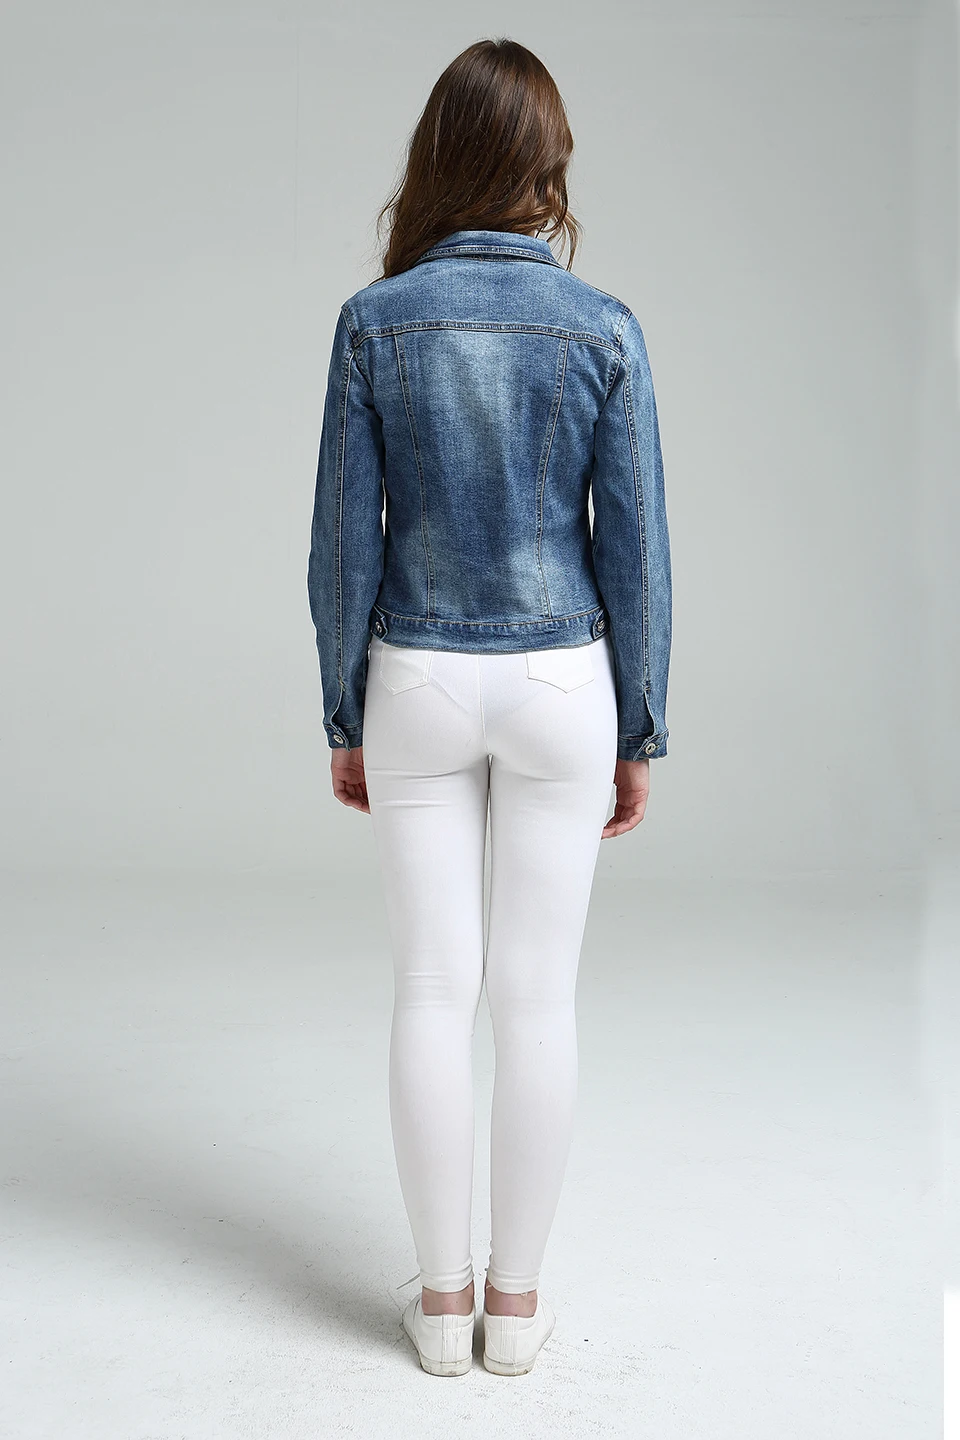 Зимняя распродажа, джинсовая куртка с длинным рукавом для женщин, плюс размер, 5XL, 6XL, осенняя растягивающаяся короткая джинсовая куртка с карманами на молнии, пальто более размера